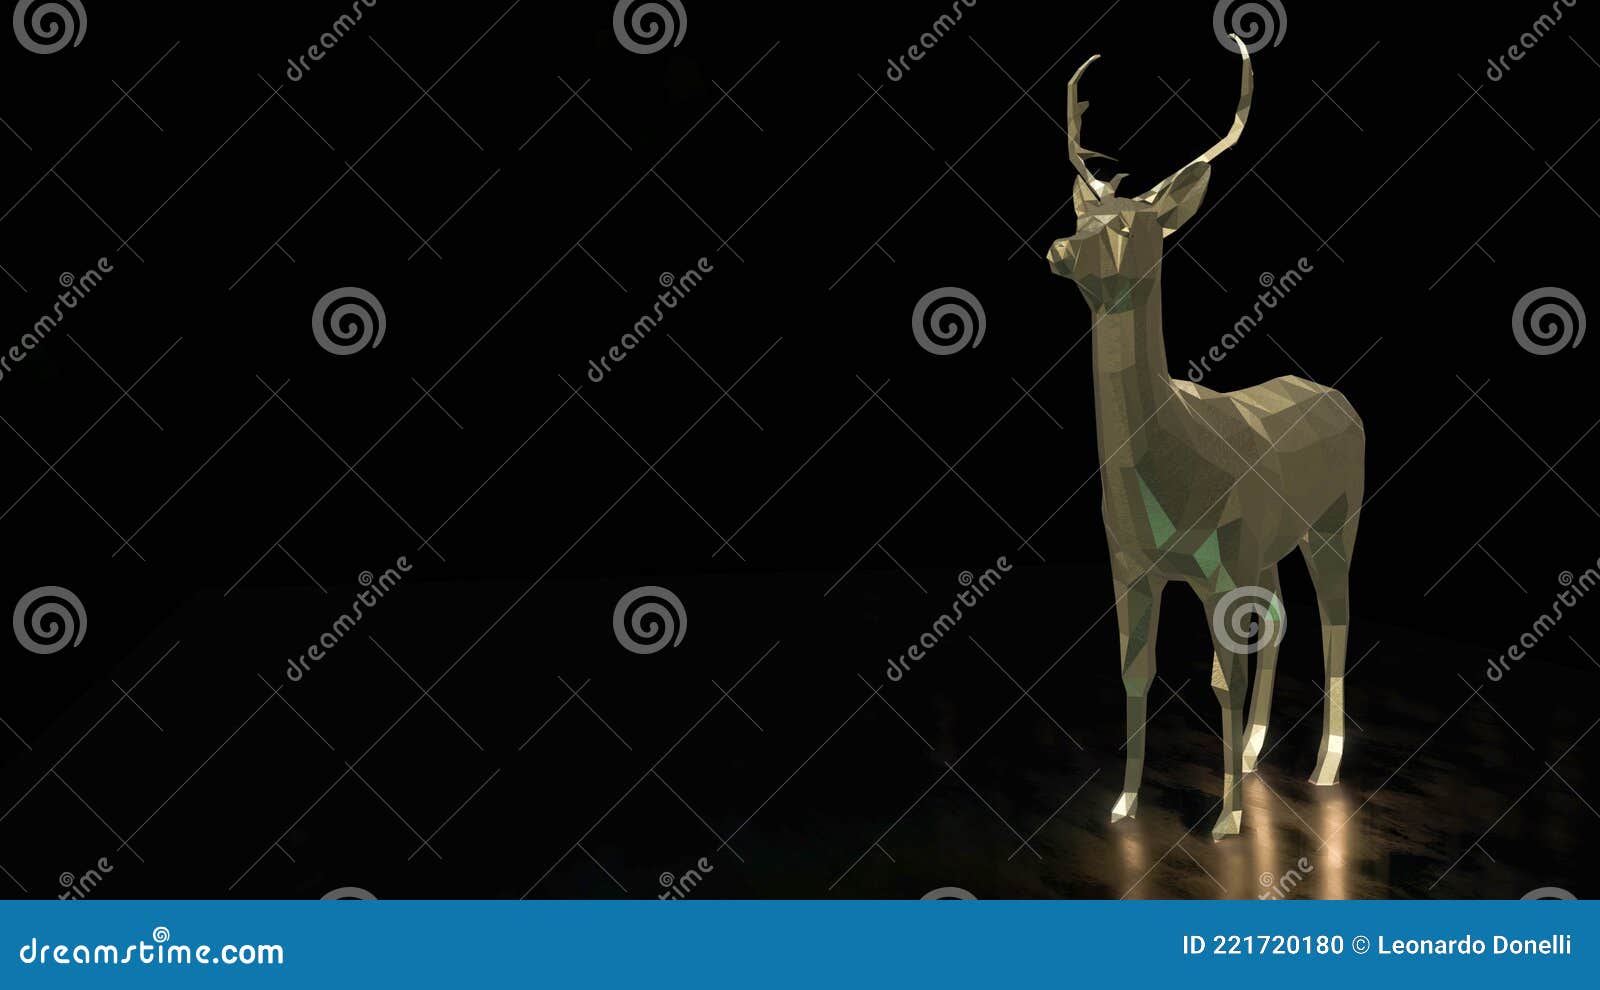 luxury deer, golden deer, bronce deer